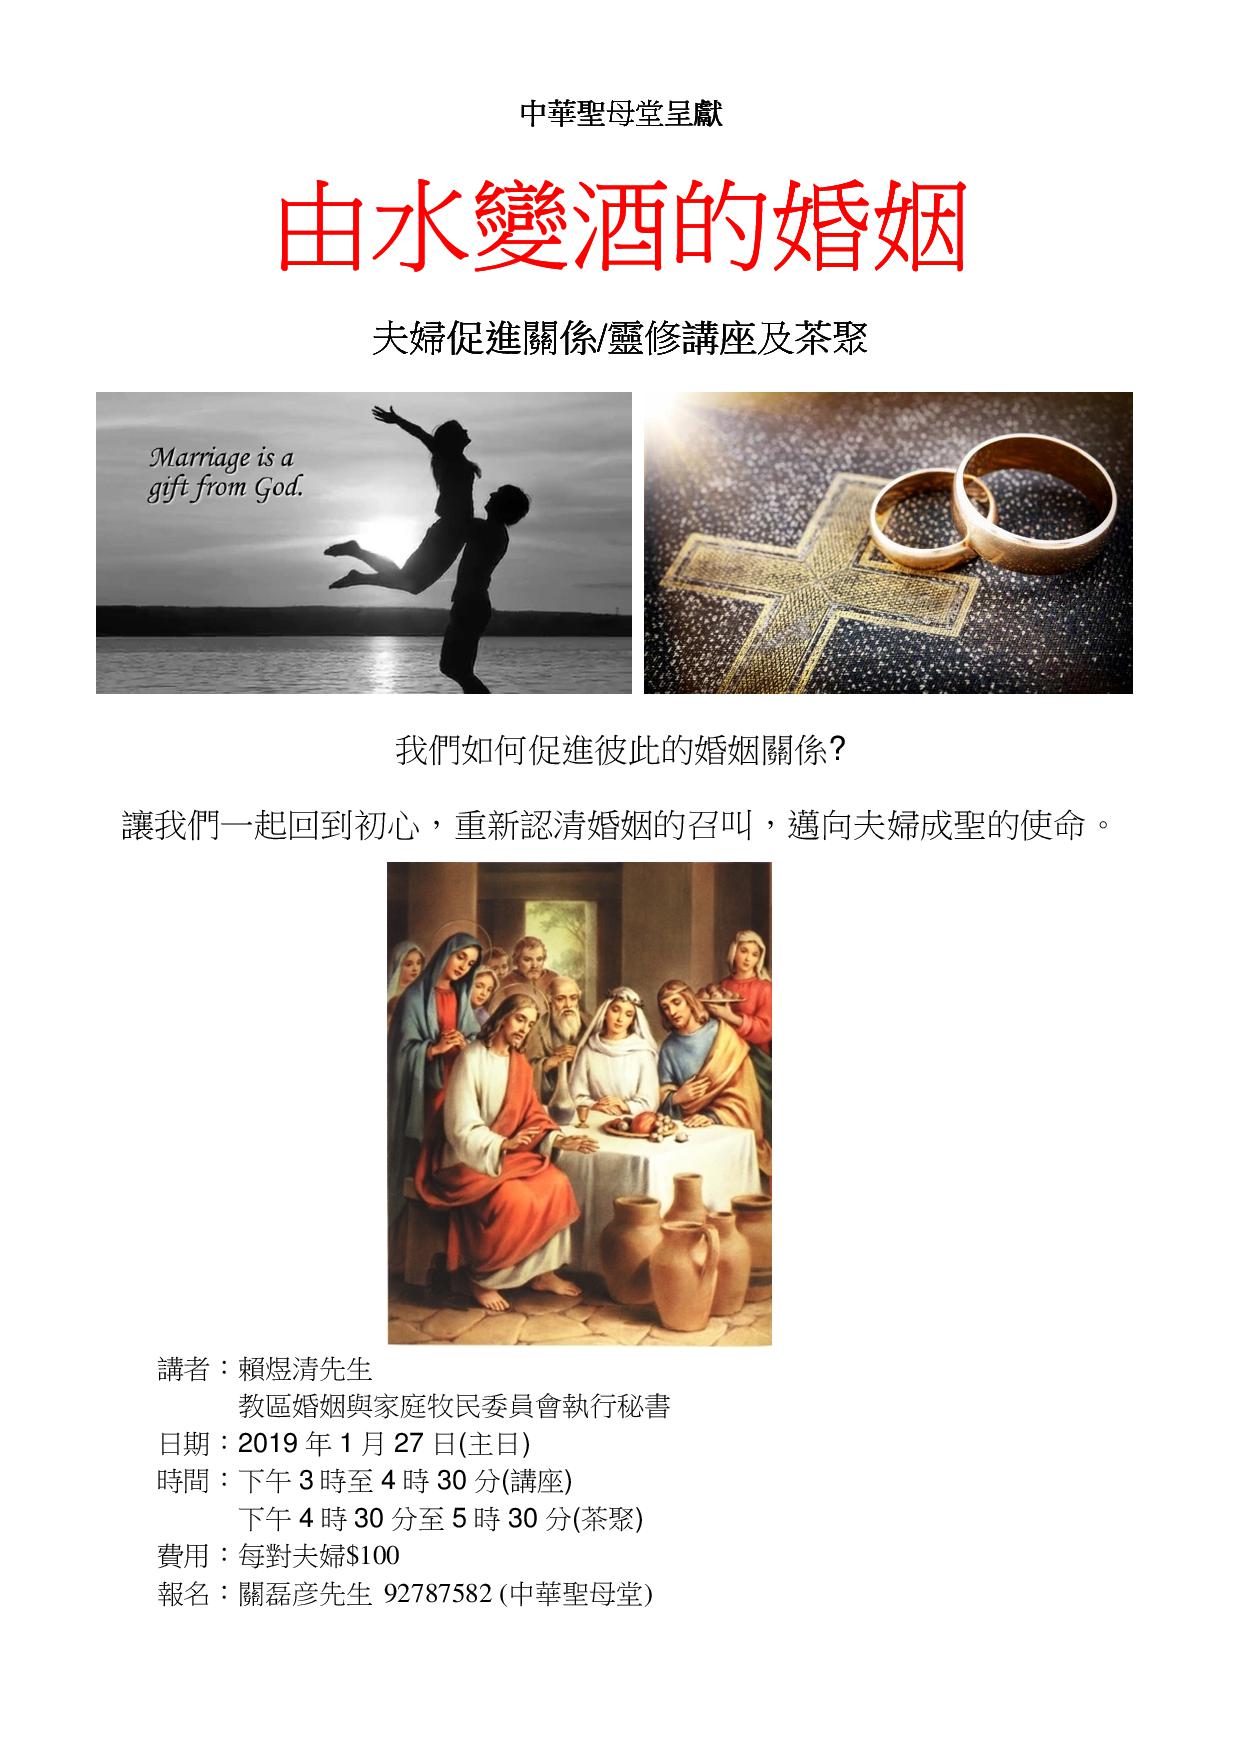 由水變酒的婚姻（夫婦促進關係／靈修講座及茶聚）-中華聖母堂